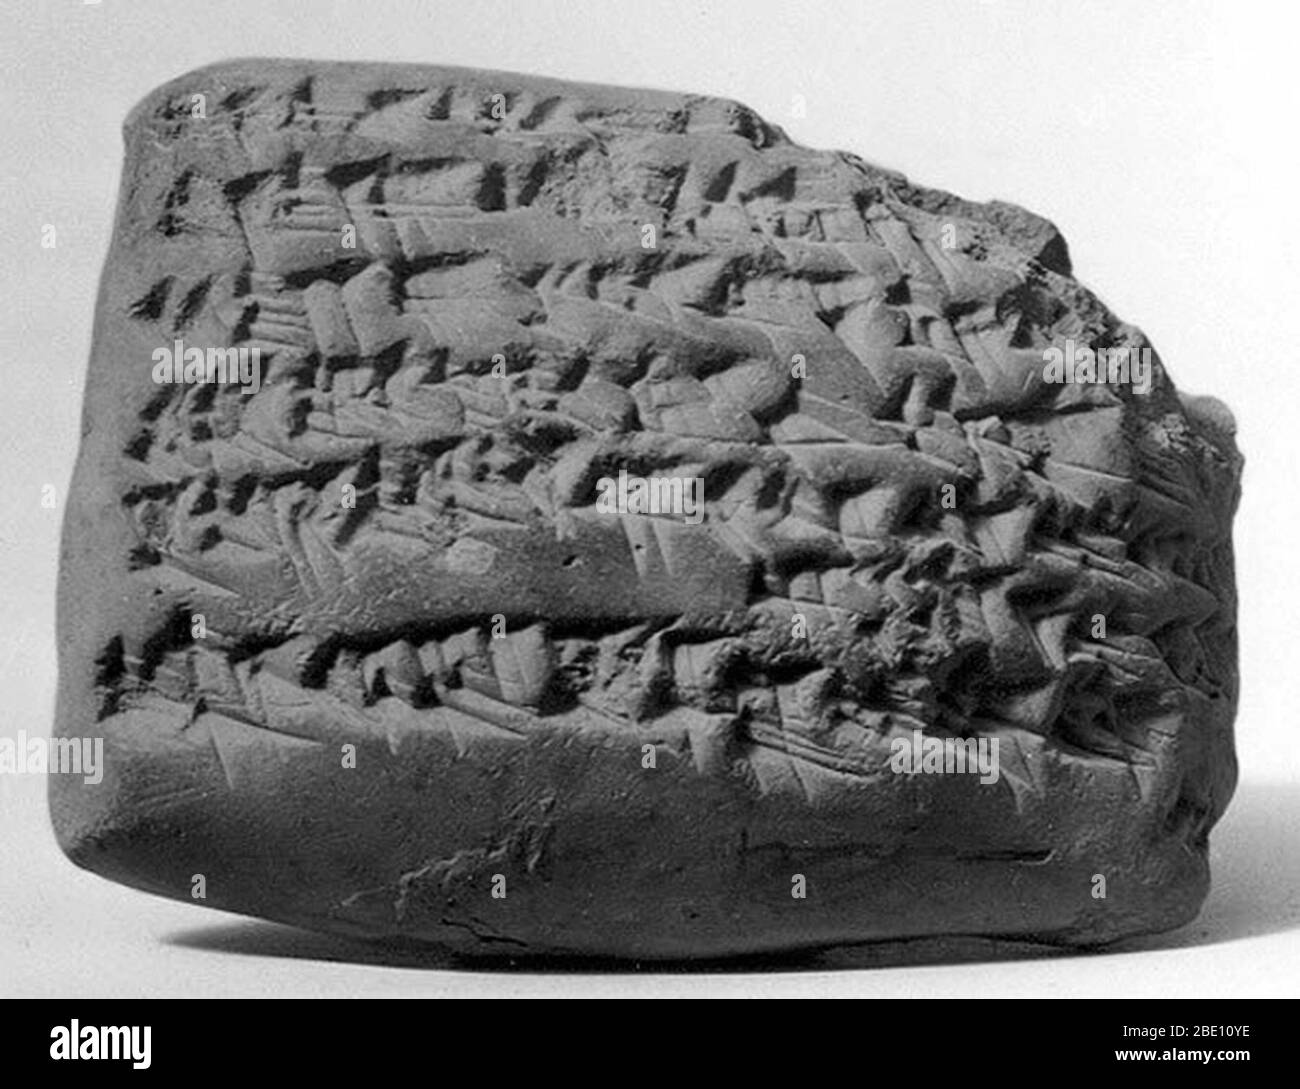 Keilschrifttafel. Gula-Beschwörung. Neo-Babylonian oder Achaemenid, ca. Mitte bis spätes 1. Jahrtausend B.C. vermutlich von Sippar (modern erklären Abu Habba) in Mesopotamia. Proto-Keilschrift ist der Name, der der frühesten Form der Schrift gegeben wird - Piktogramme, die auf Tontafeln gezeichnet wurden. Allmählich wurden die Piktogramme zu keilförmigen (lateinischen, "keilförmigen") Zeichen abstrahiert, die eher beeindruckt als gezeichnet waren. In seinem größten Umfang wurde Keilschrift von der Mittelmeerküste Syriens bis zum westlichen Iran und von Hittite Anatolien bis nach Südmesopotamien verwendet. Es wurde angepasst, um mindestens fiftee zu schreiben Stockfoto